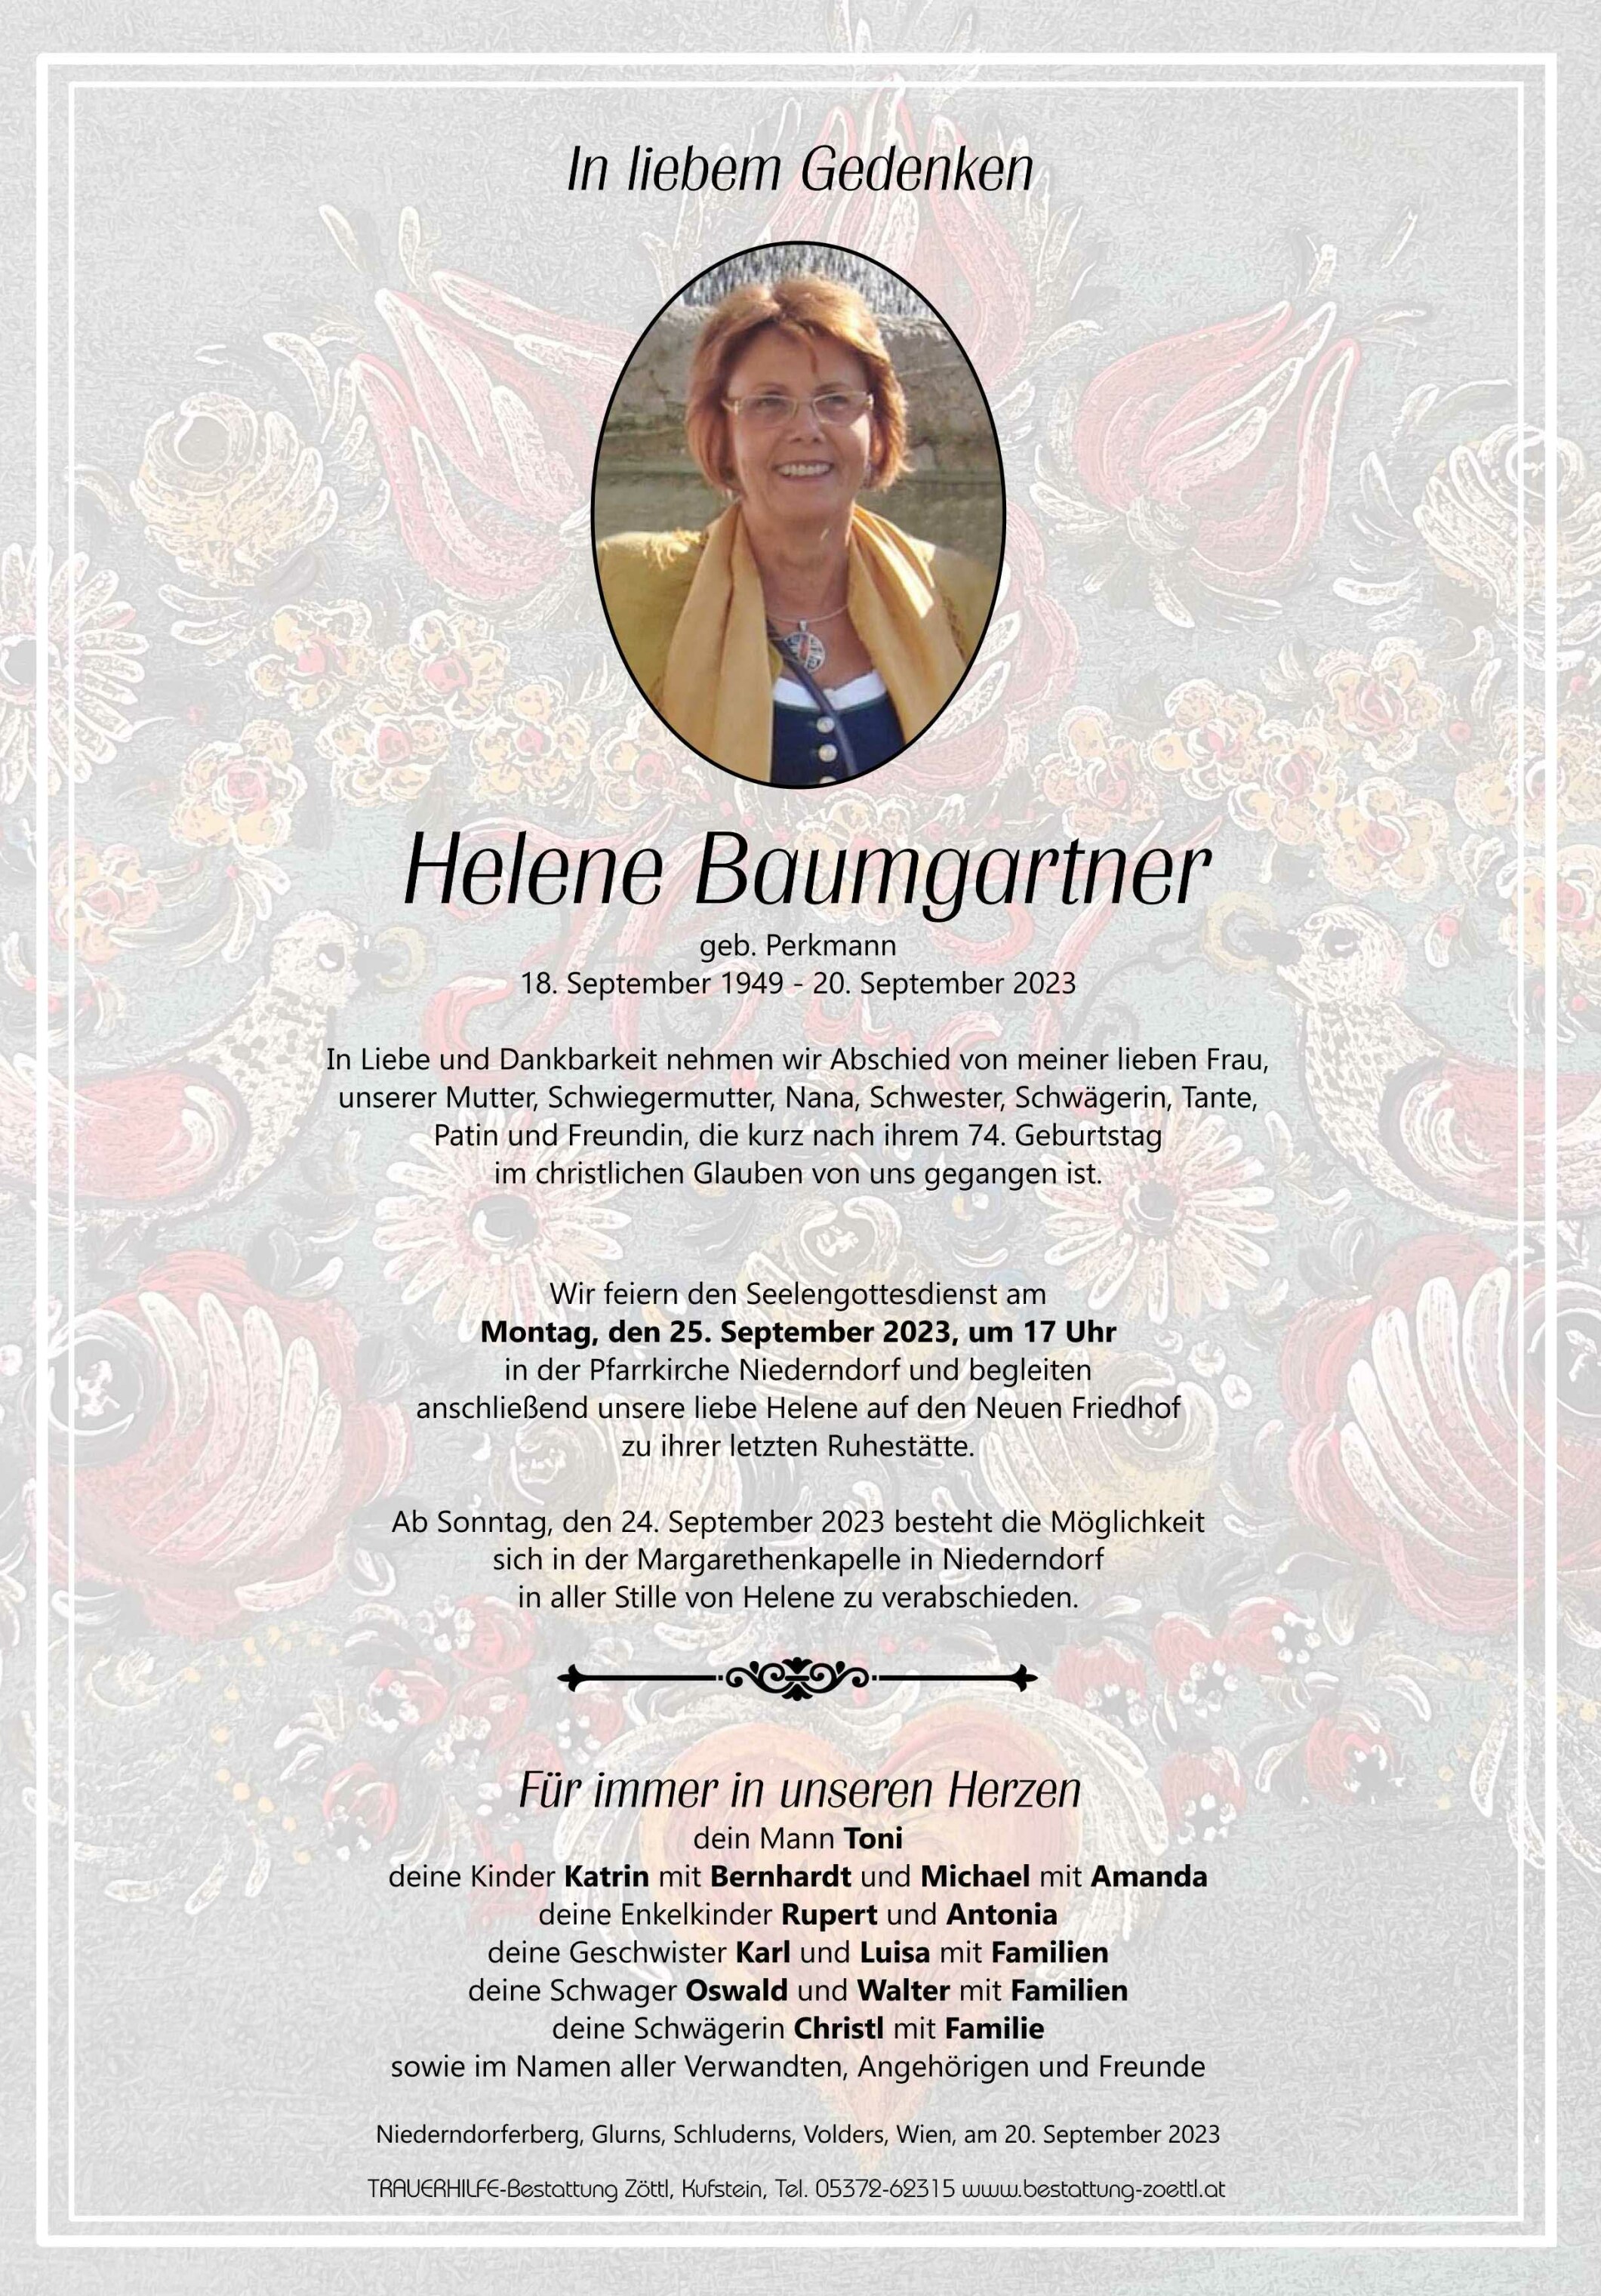 Helene Baumgartner